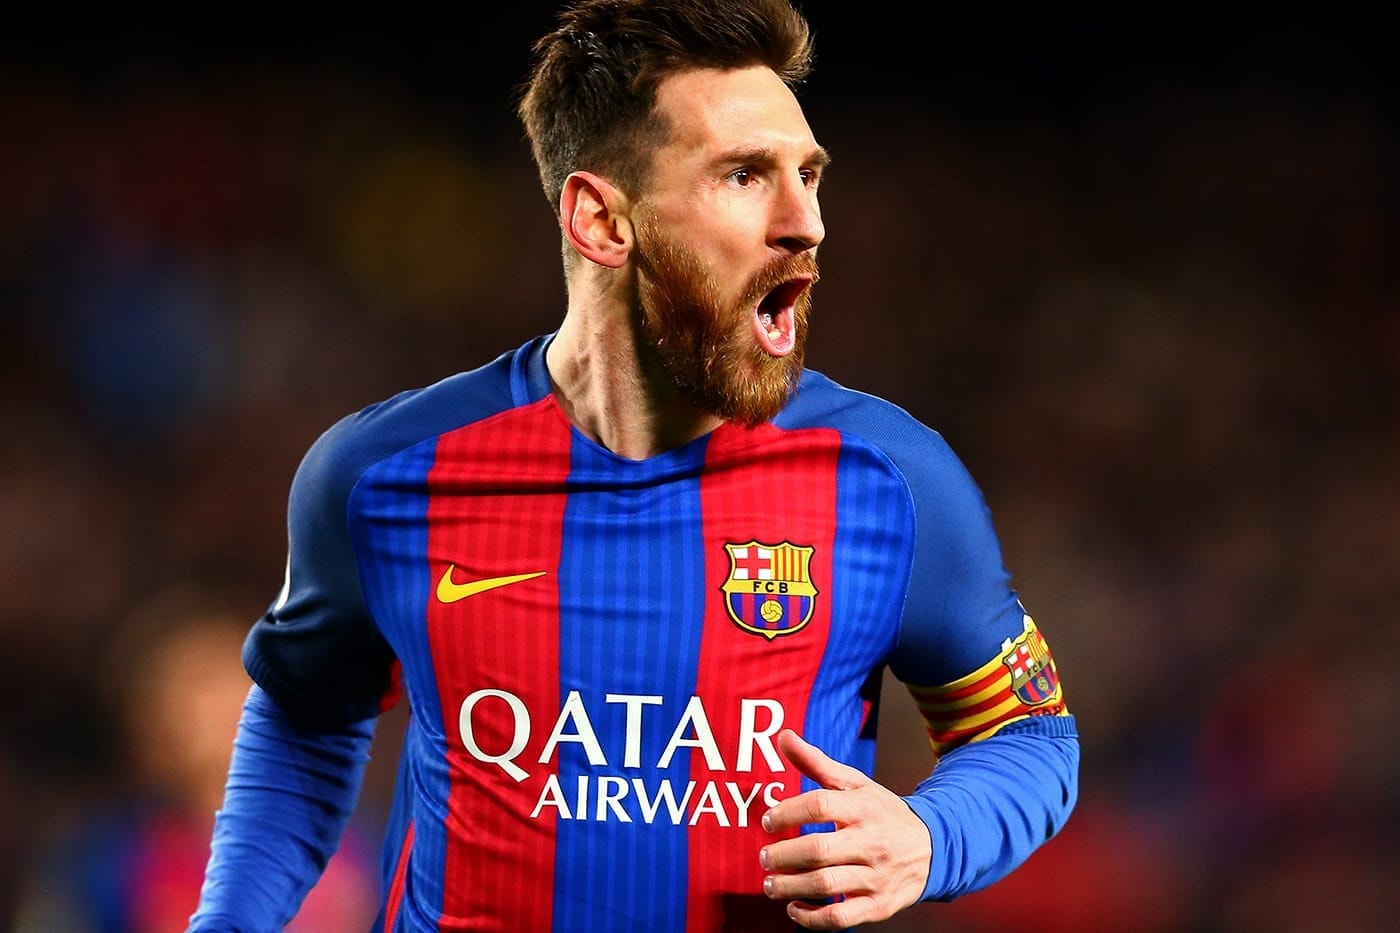 F.C. Barcelona 总裁公开证实将迎接 Lionel Messi 回归